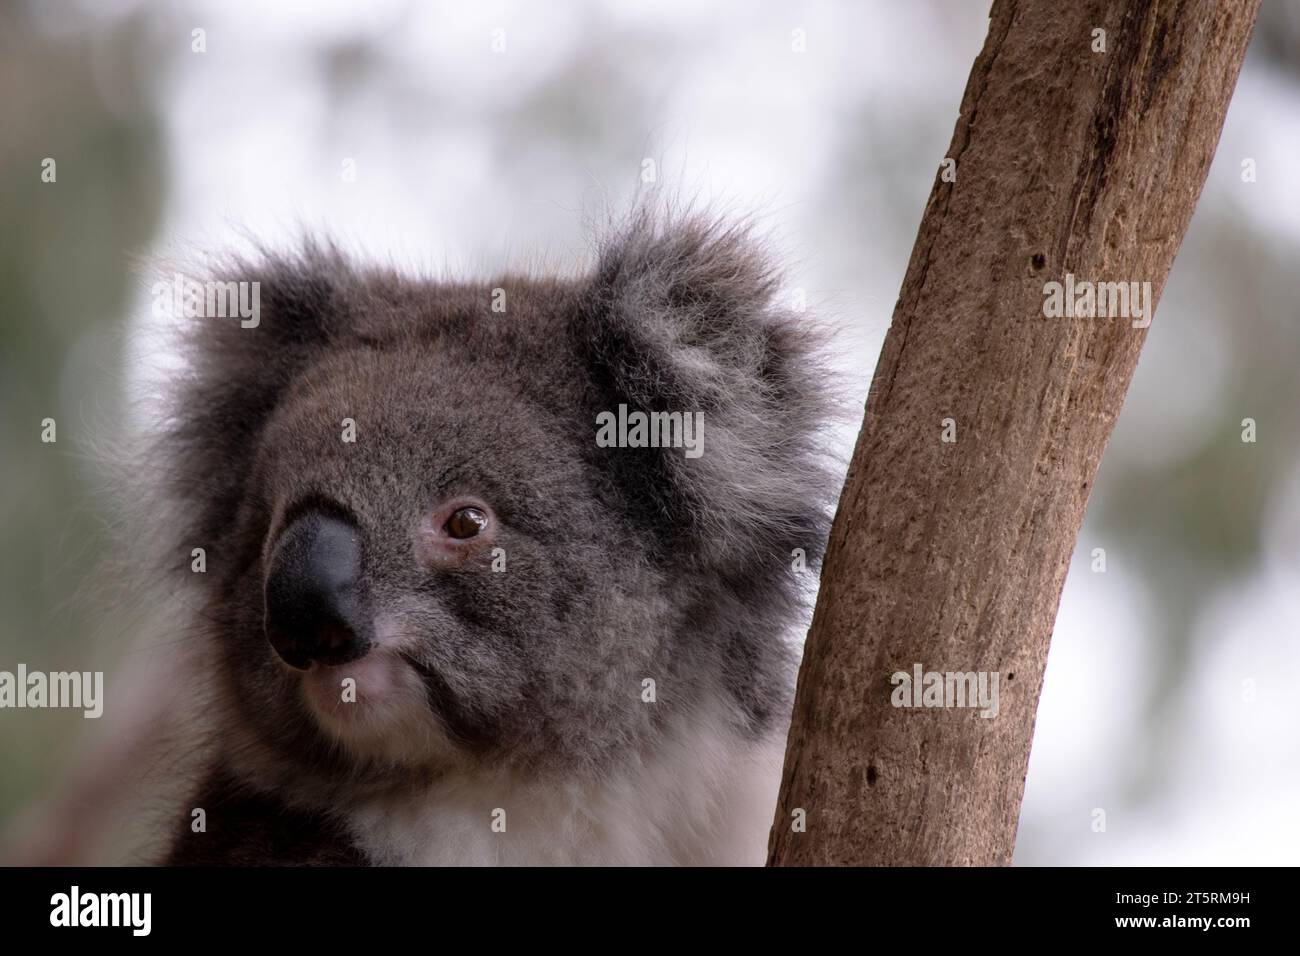 Il Koala ha una grande testa rotonda, grandi orecchie da pelliccia e un grosso naso nero. La loro pelliccia è solitamente grigio-marrone nel colore con pelliccia bianca sul petto, sulle braccia interne, Foto Stock